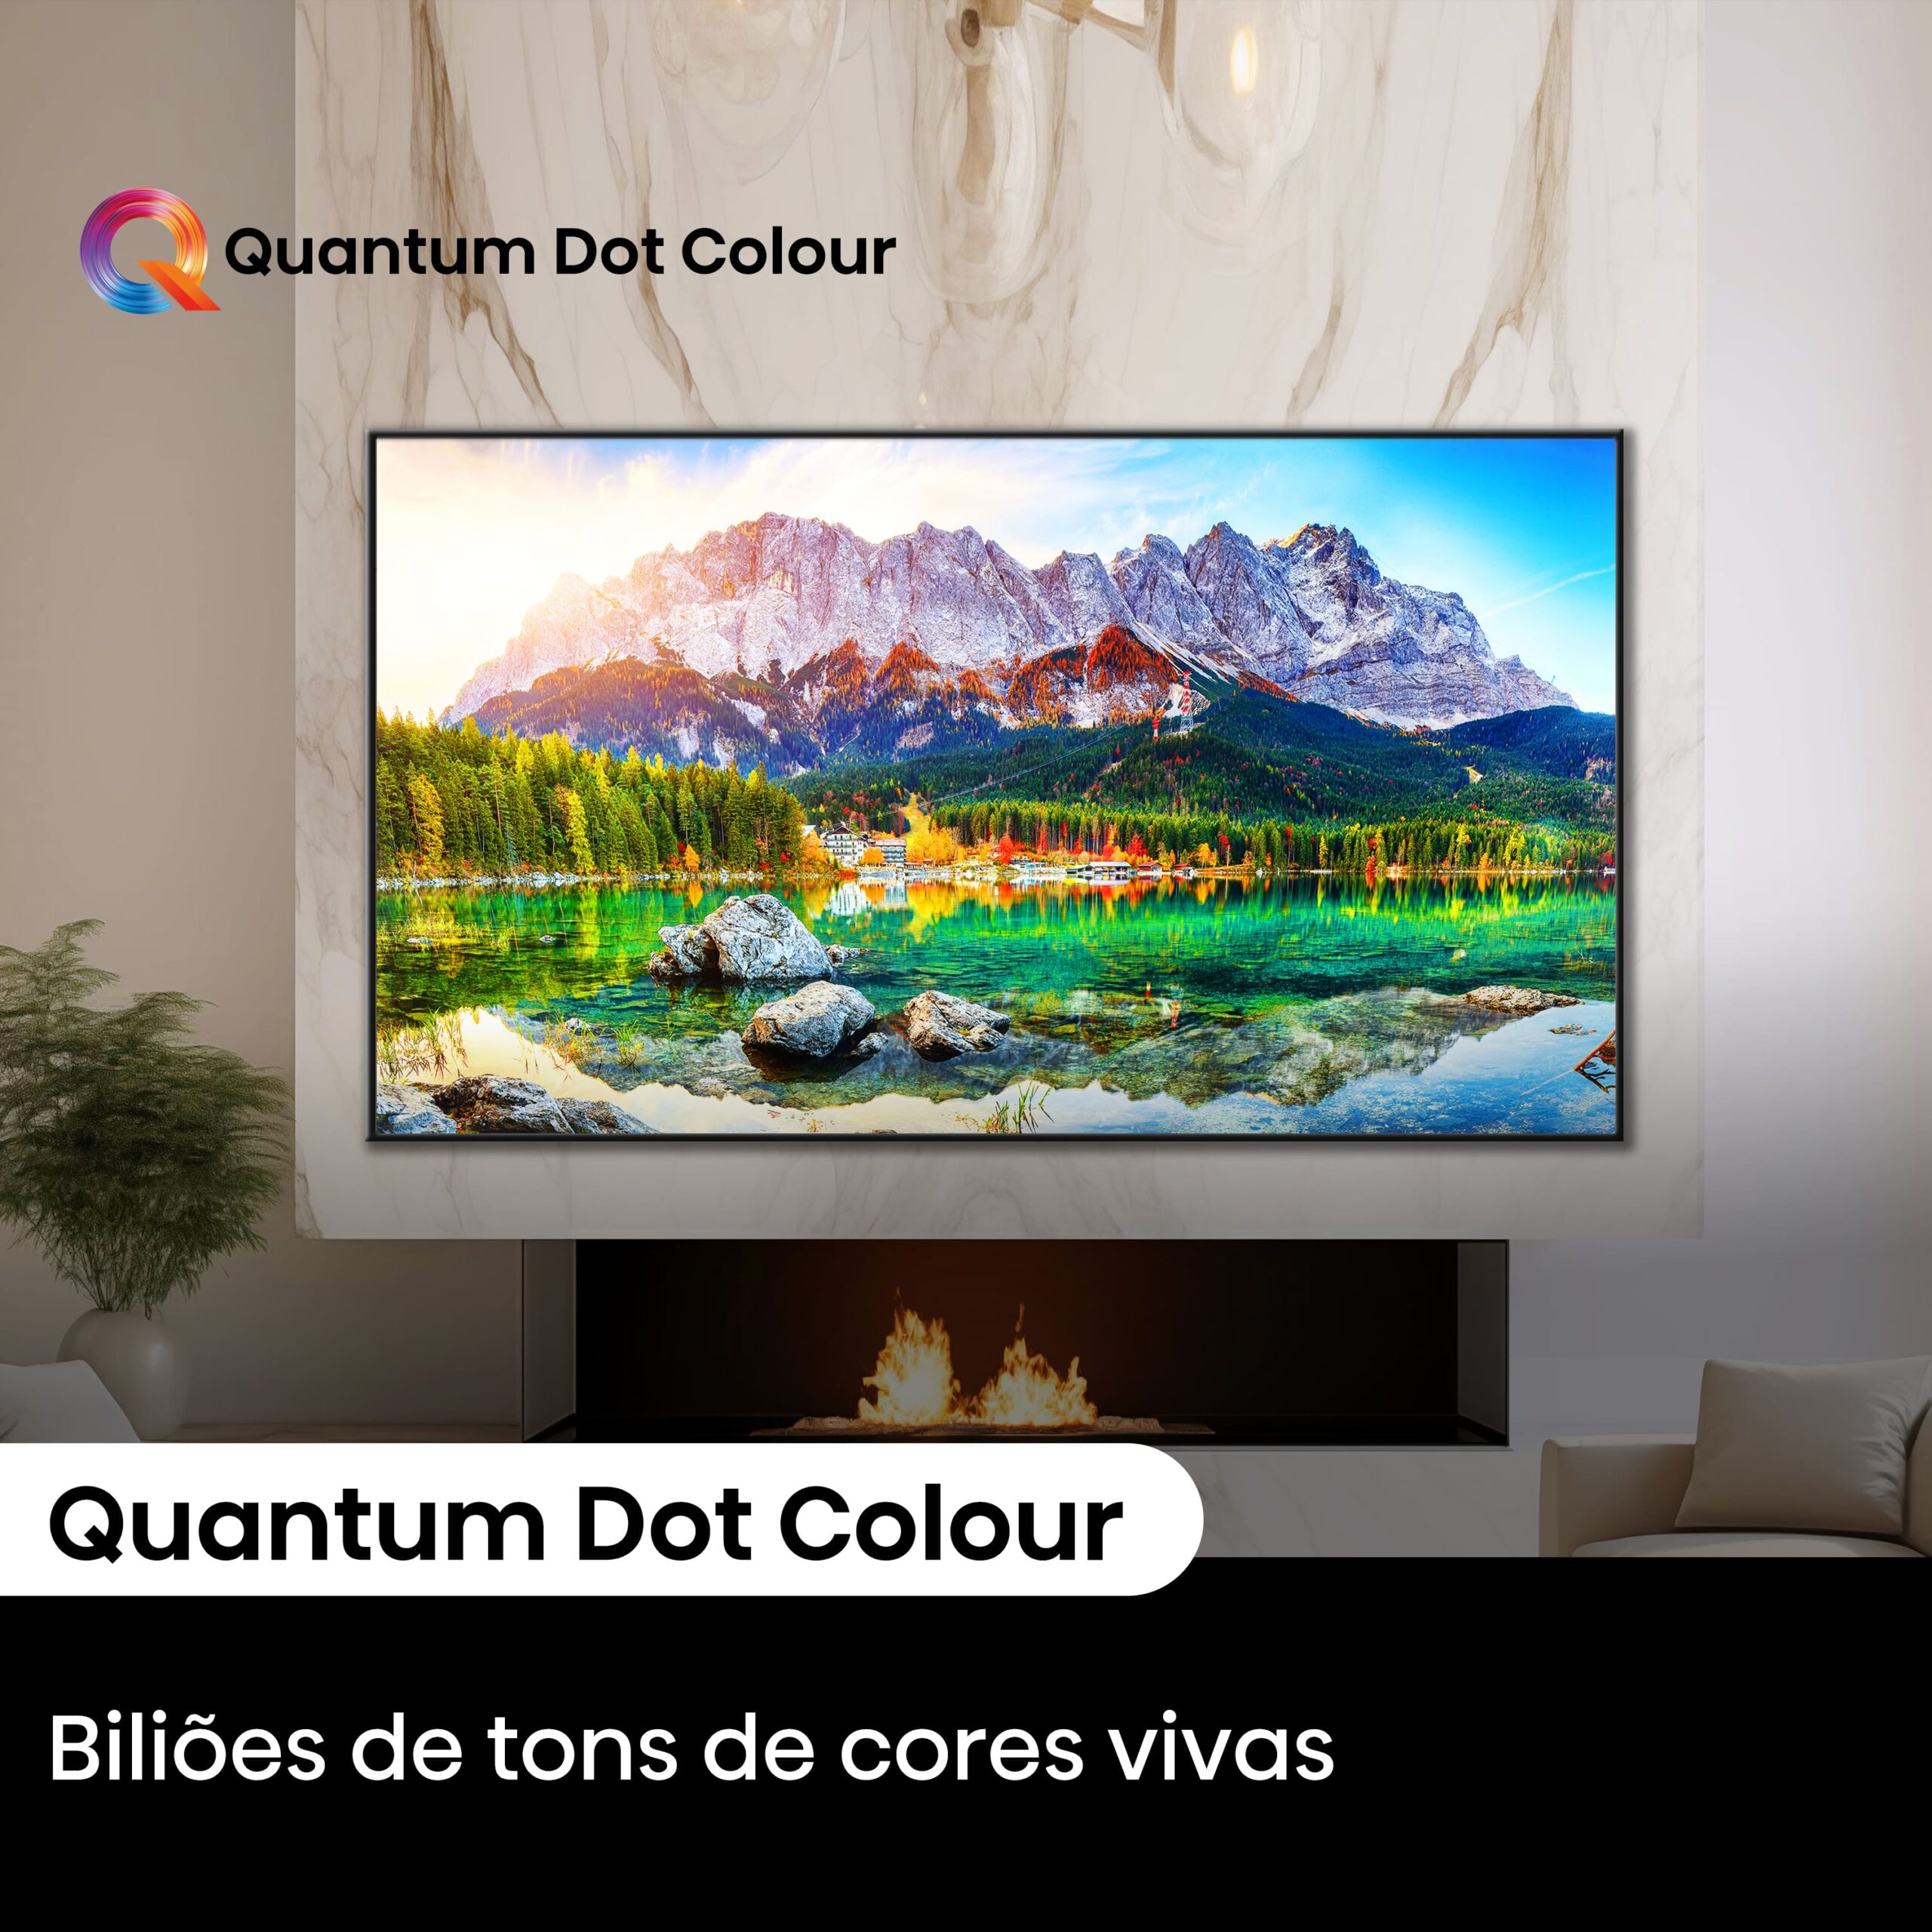 Hisense - Mini-LED TV 65U7NQ, Quantum Dot Colour, Modo Jogo de 144Hz, Full Array Local Dimming